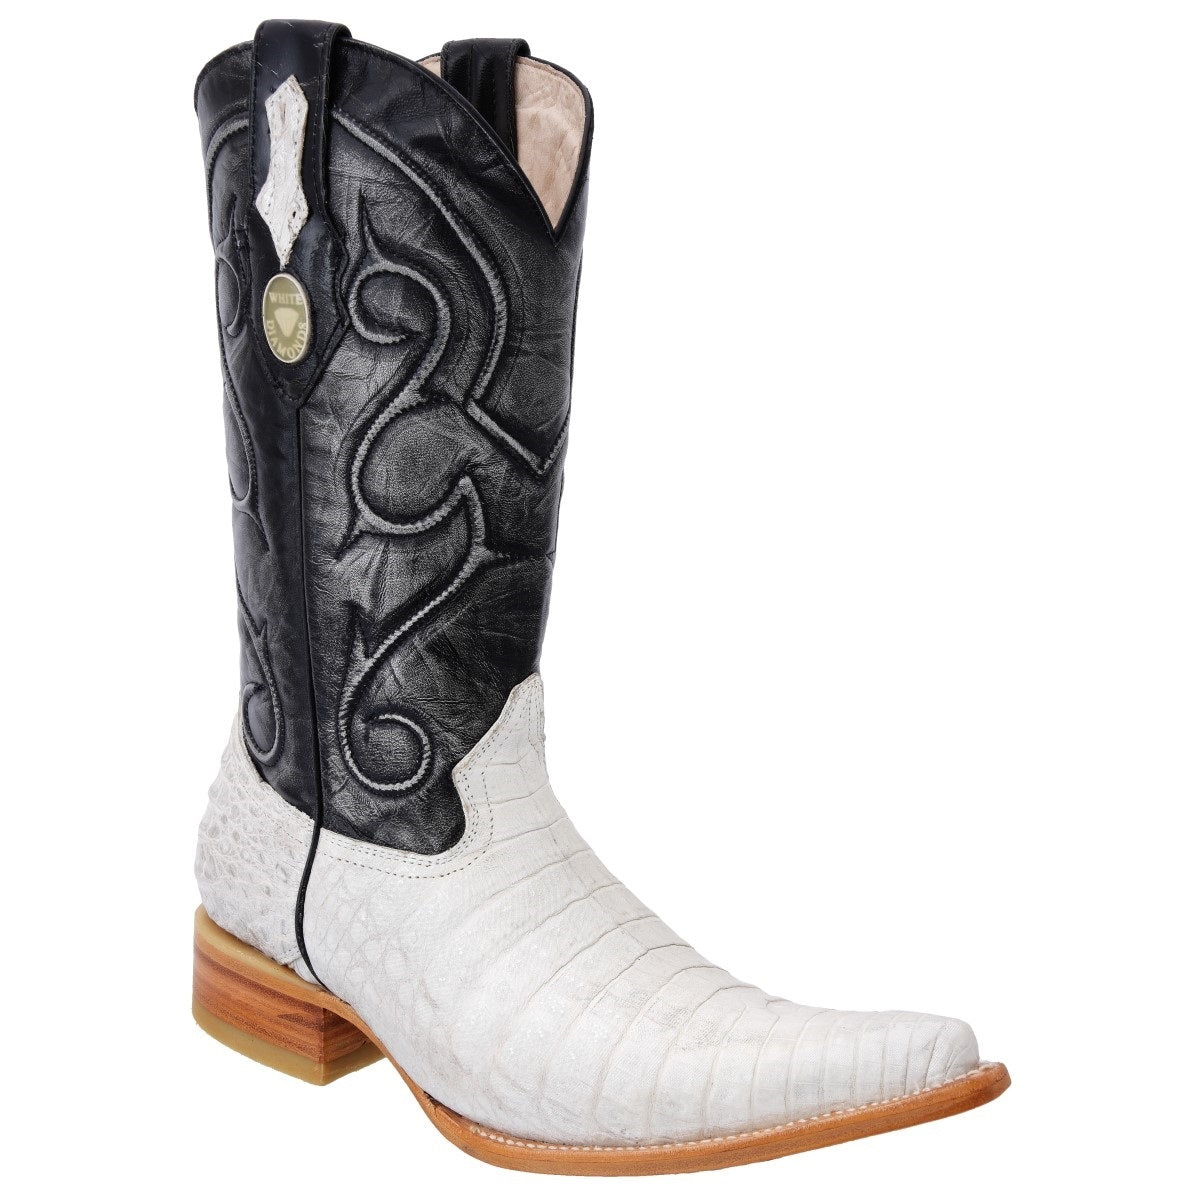 Botas Vaqueras TM-WD0103 - Western Boots